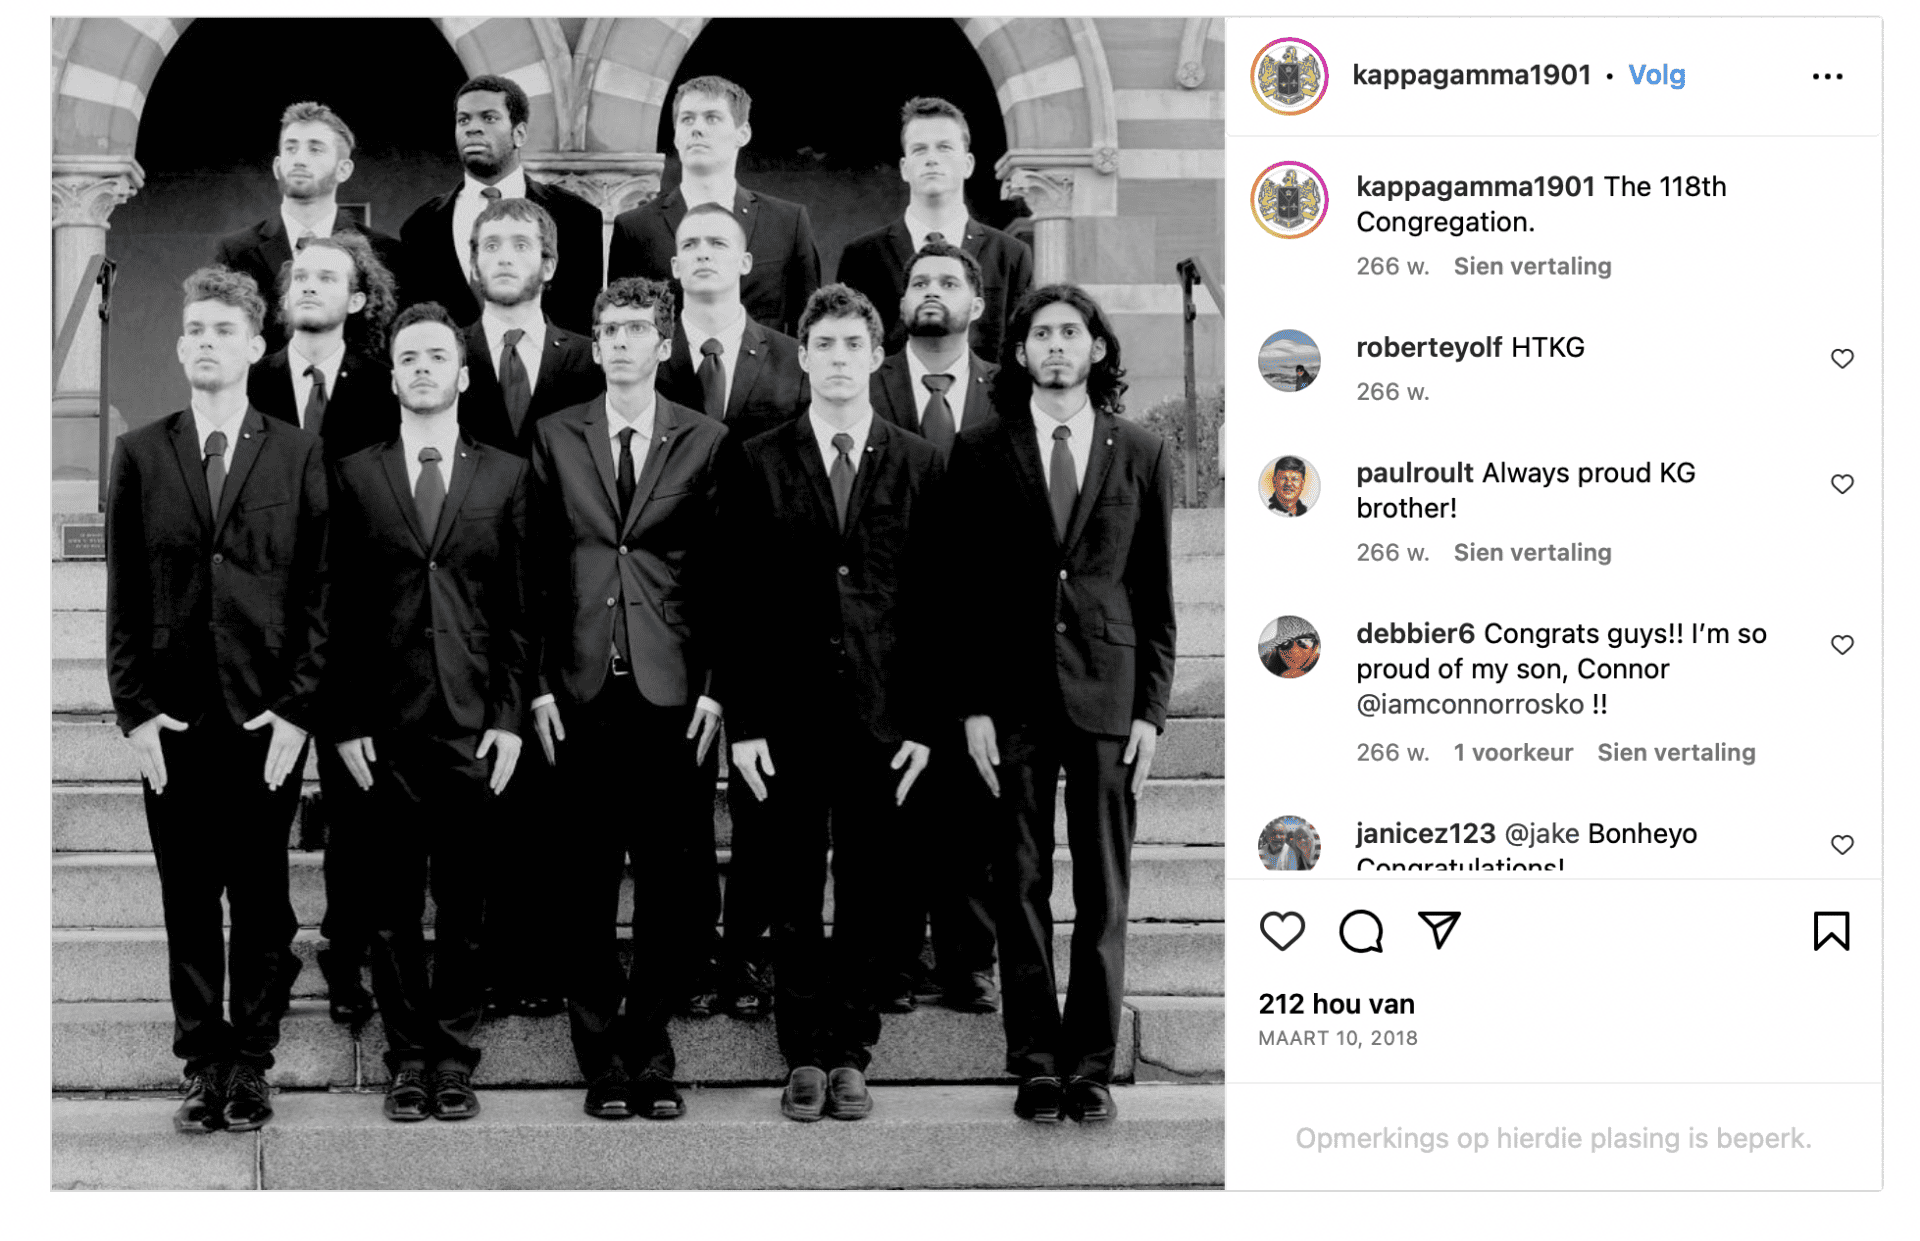 Zrzut ekranu z Instagrama. Na zdjęciu widzimy grupkę młodych mężczyzn w garniturach stojących na schodach.